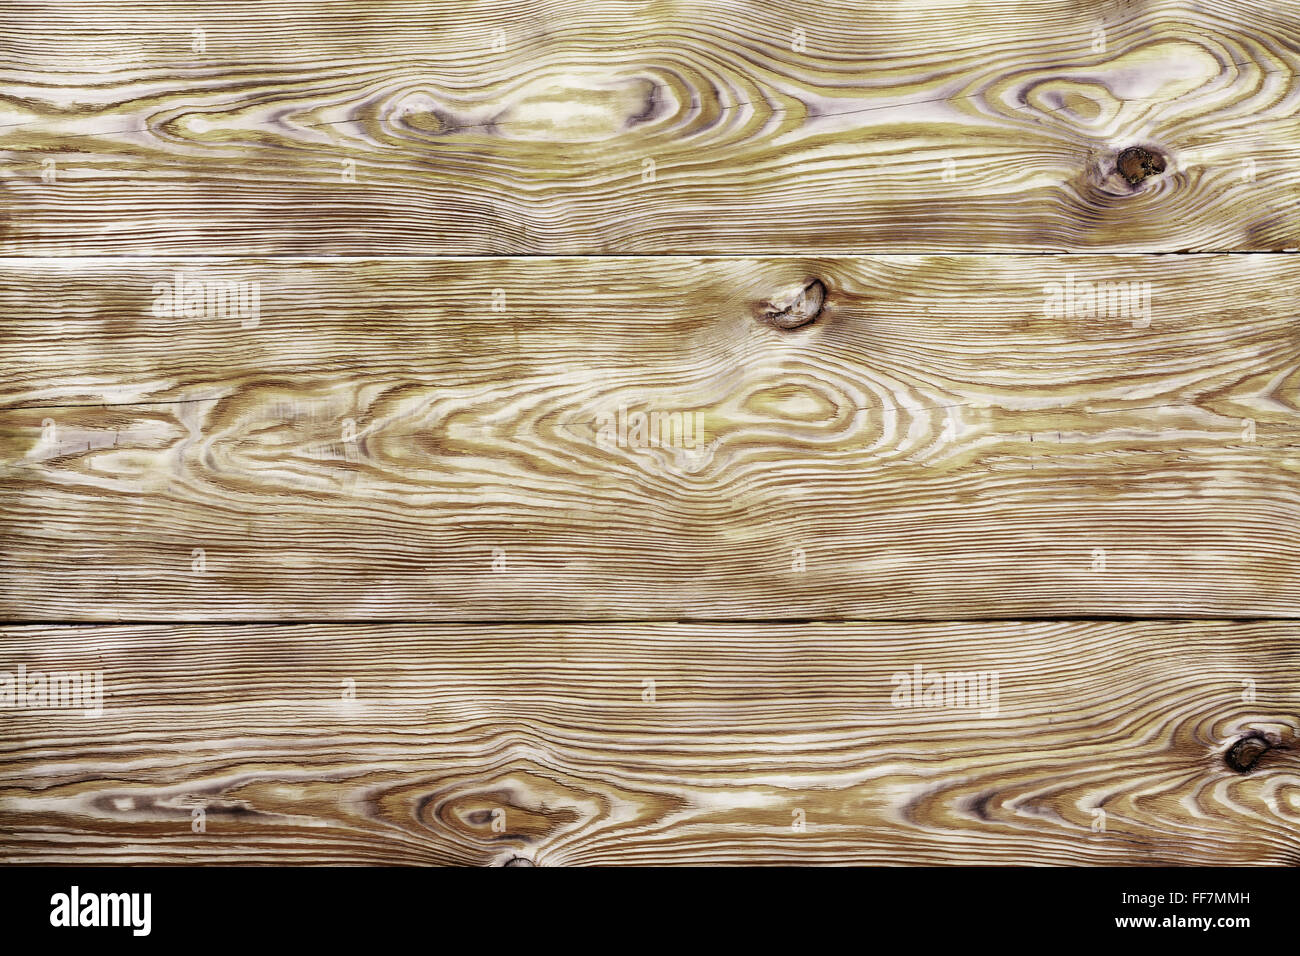 Grunge textura de madera utilizado como fondo. Closeup Foto de stock